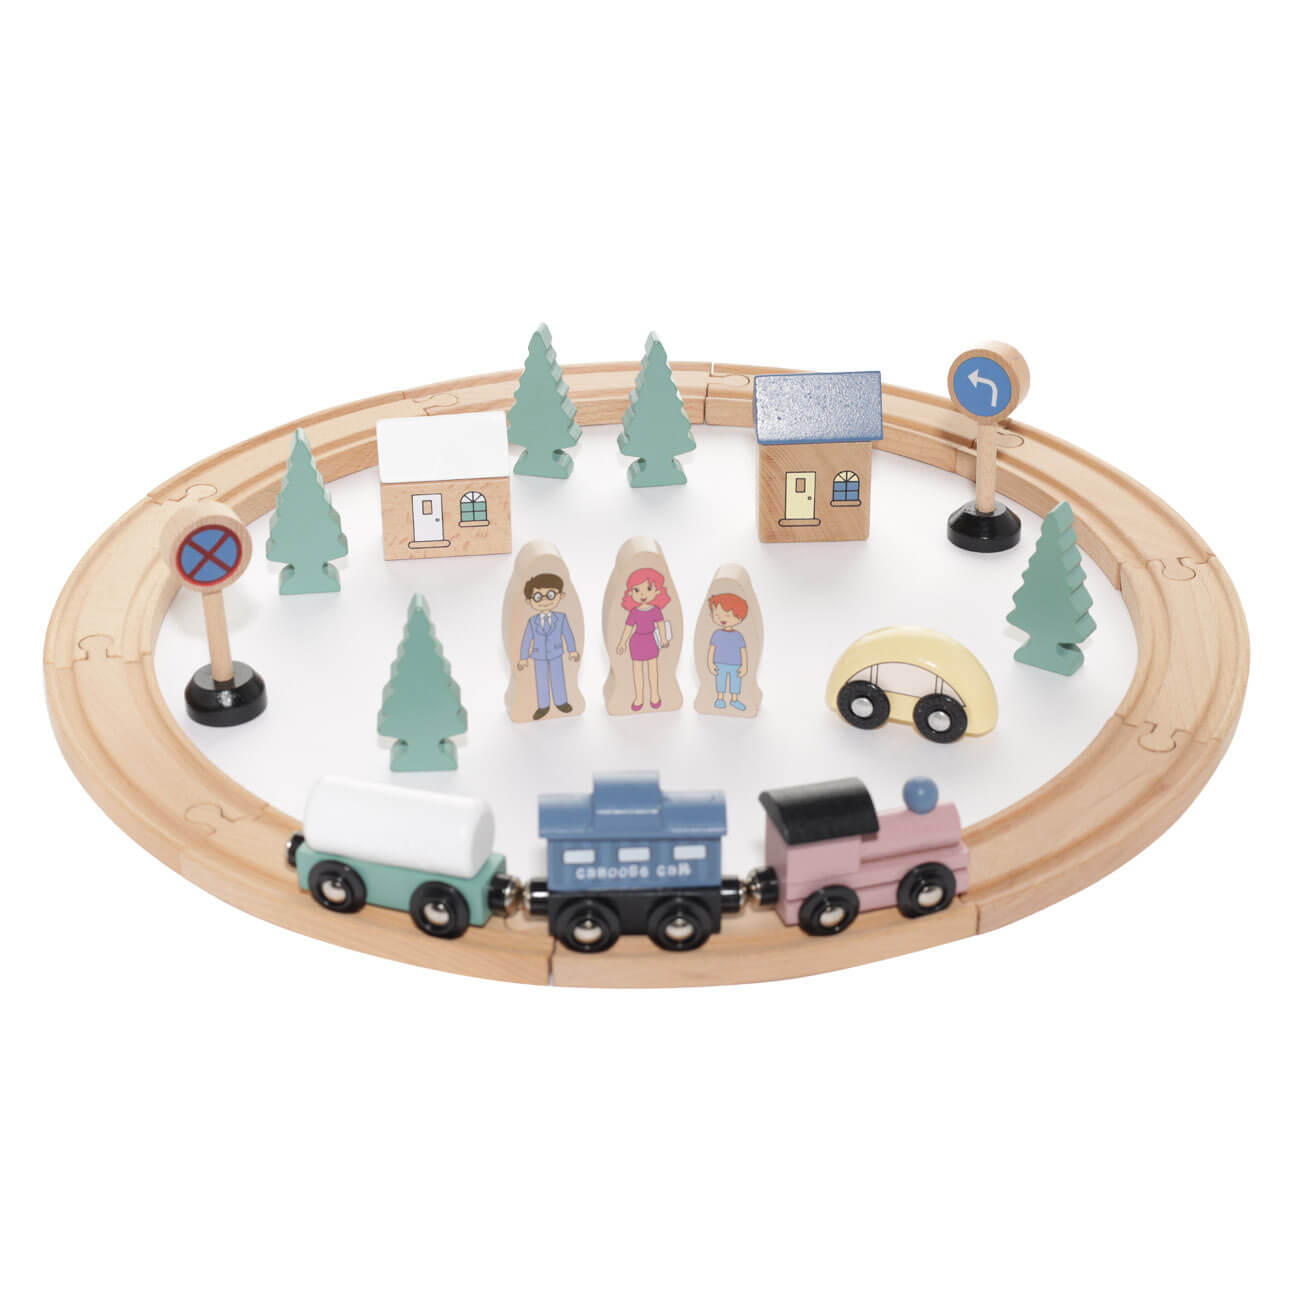 Железная дорога игрушечная, 28 см, дерево, Город, Game железная дорога train на батарейках в пакете